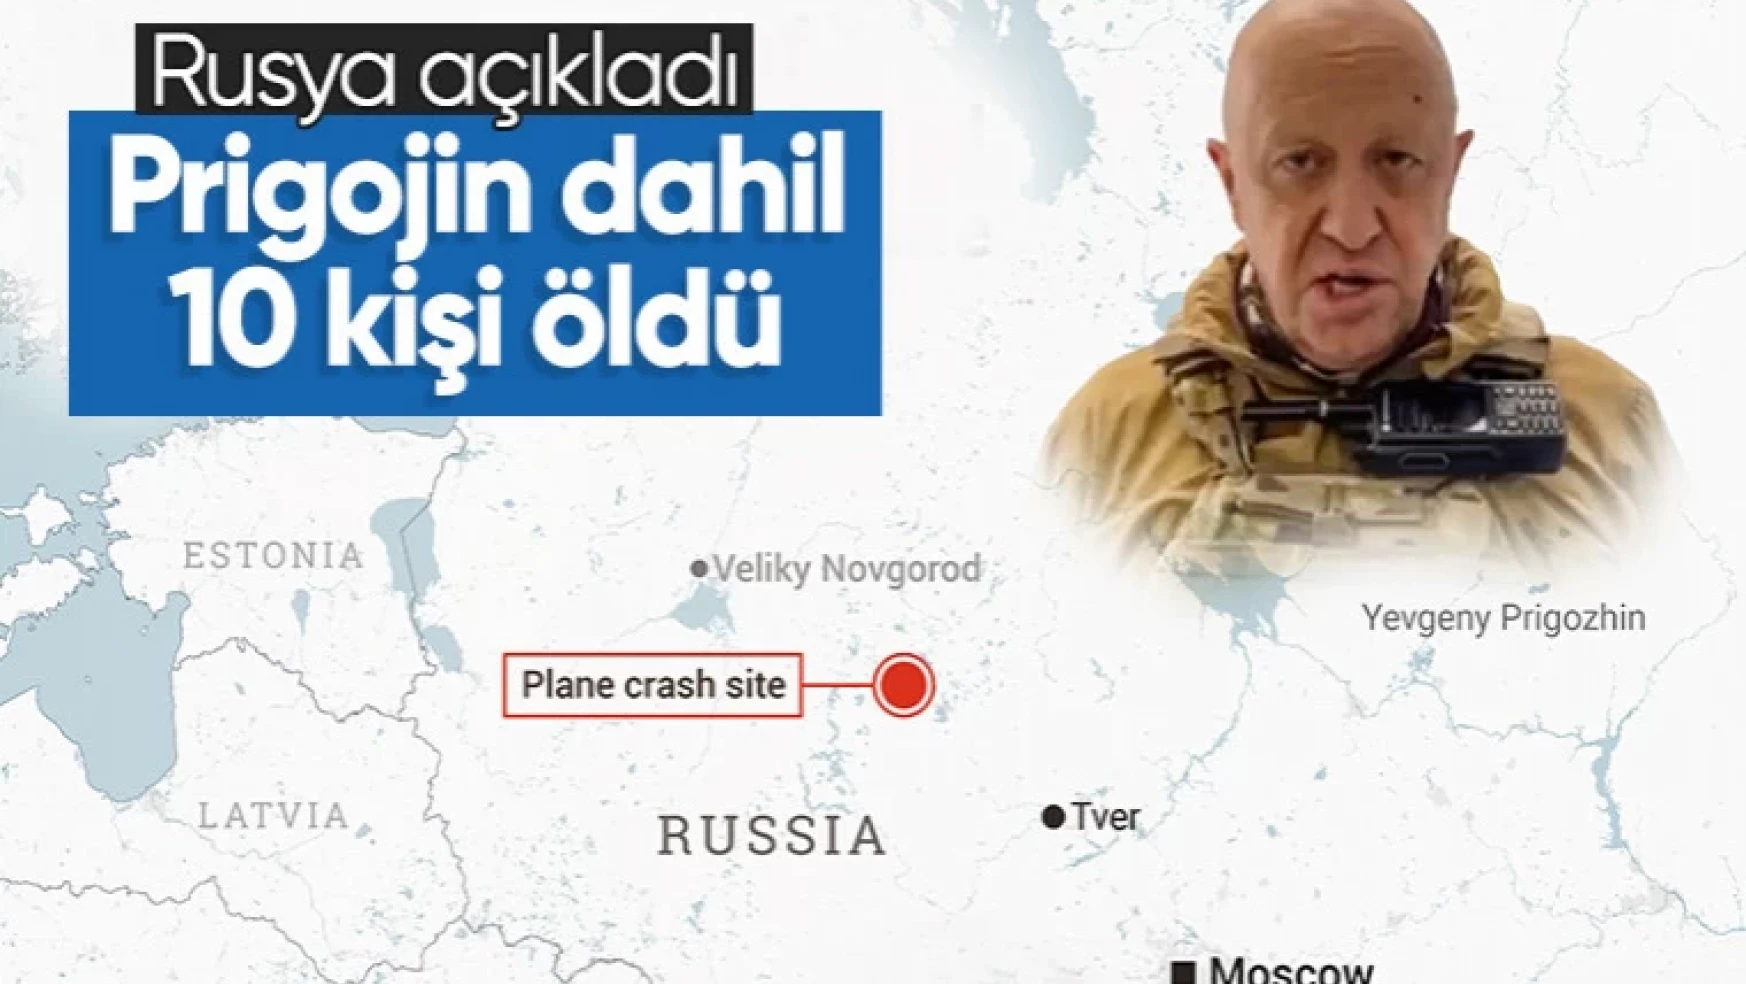 Rusya'dan düşen uçakla ilgili açıklama: Prigojin dahil 10 kişi öldü